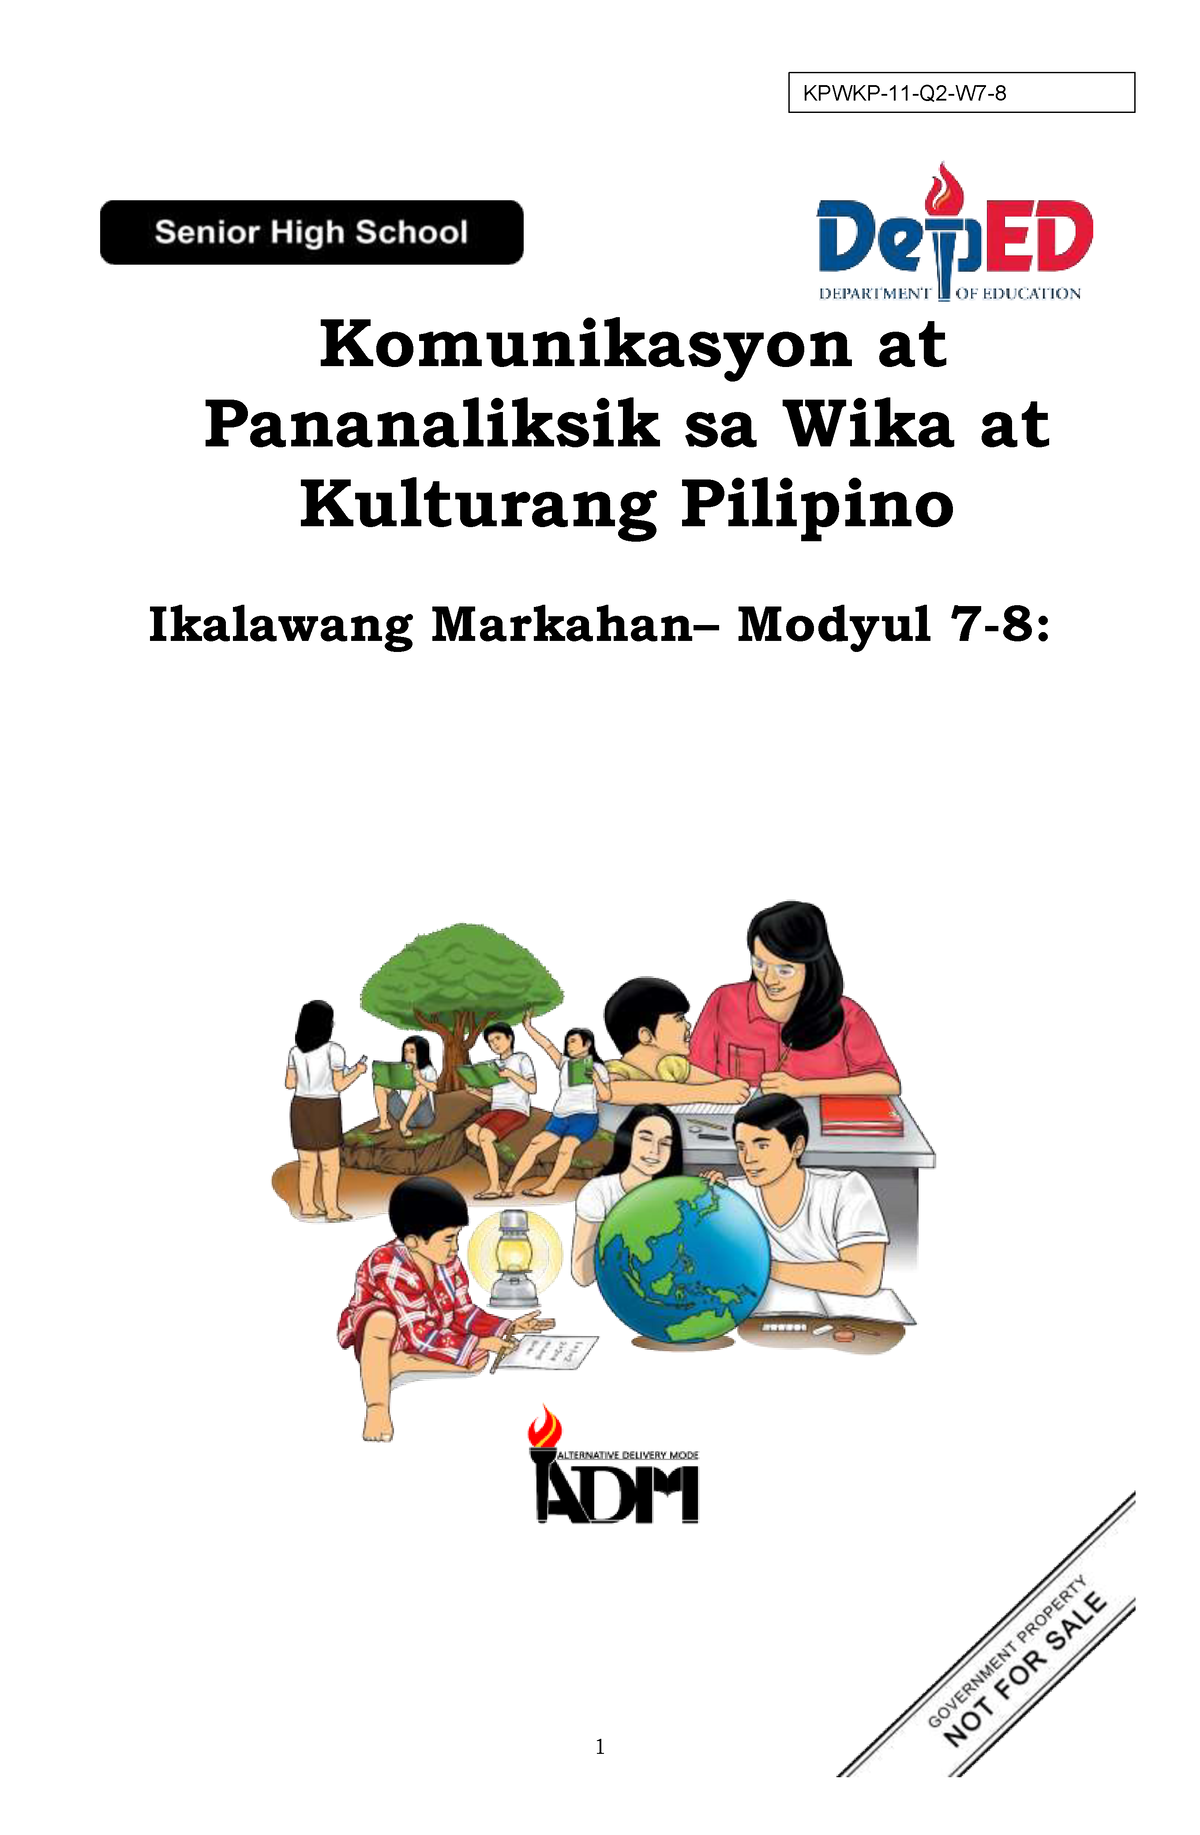 Pagkakaiba Ng Kultura Ng Pilipinas Sa Ibang Bansa Brainly - pagkakaiba lahi